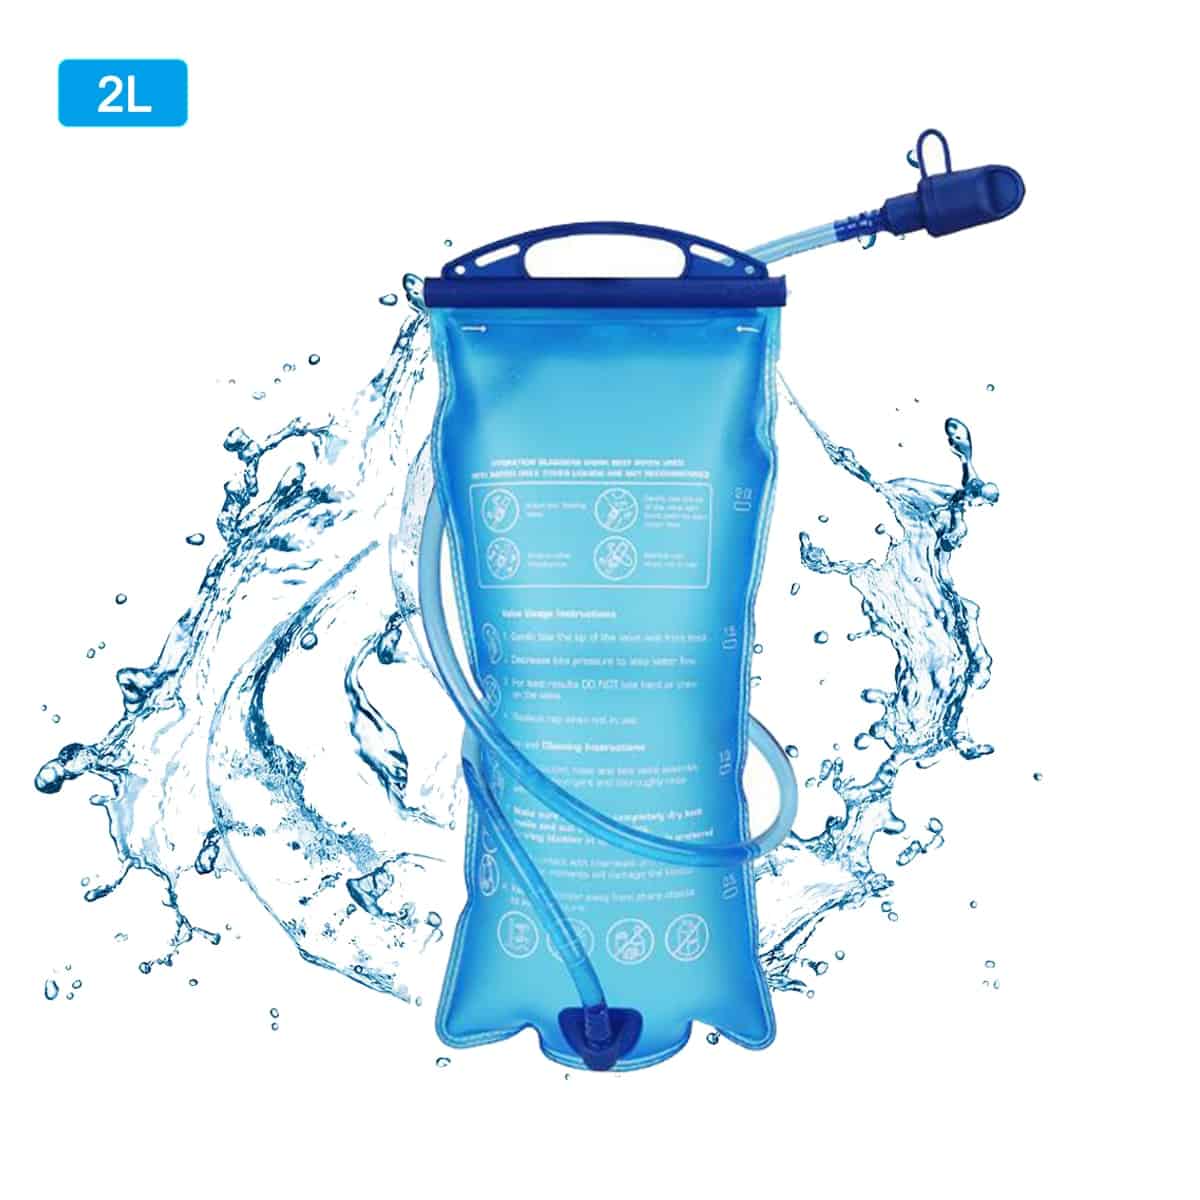 Sacca per acqua portatile in TPU sistema di idratazione 2L zaino per vescica campeggio escursionismo arrampicata ciclismo borse pieghevoli